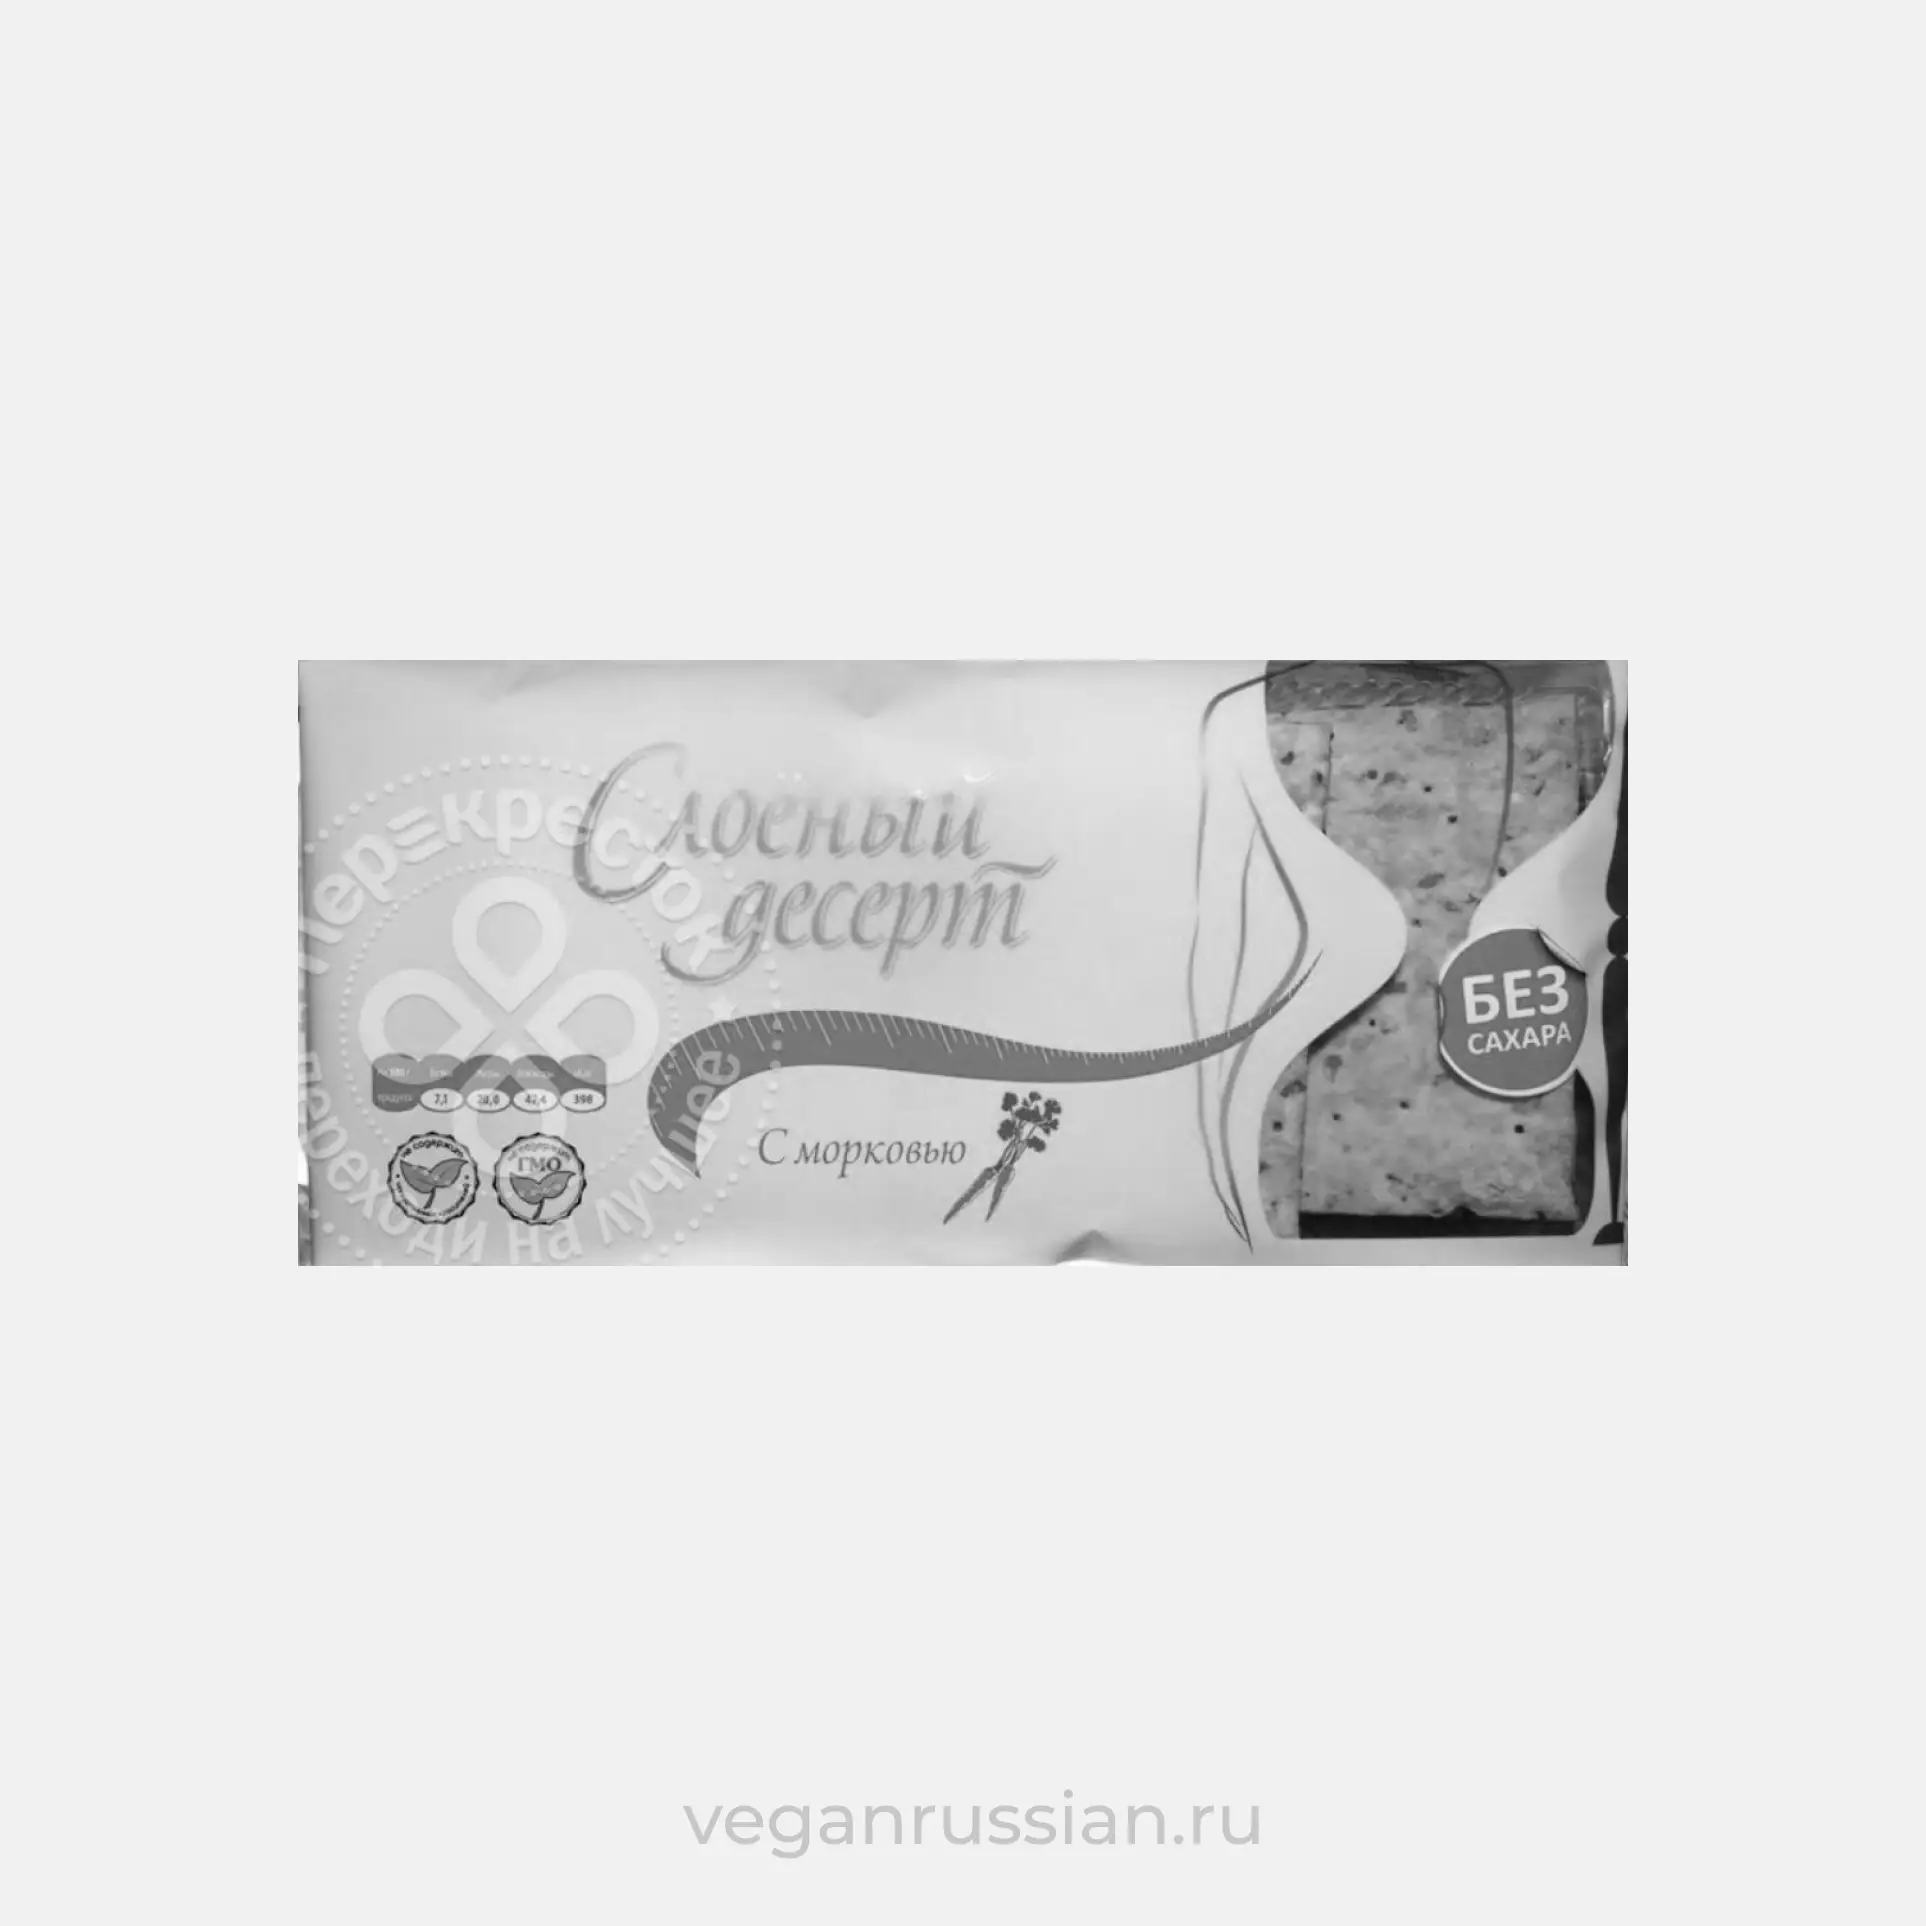 Архив: Слоеный десерт (слойка) с морковью Полет 300 г